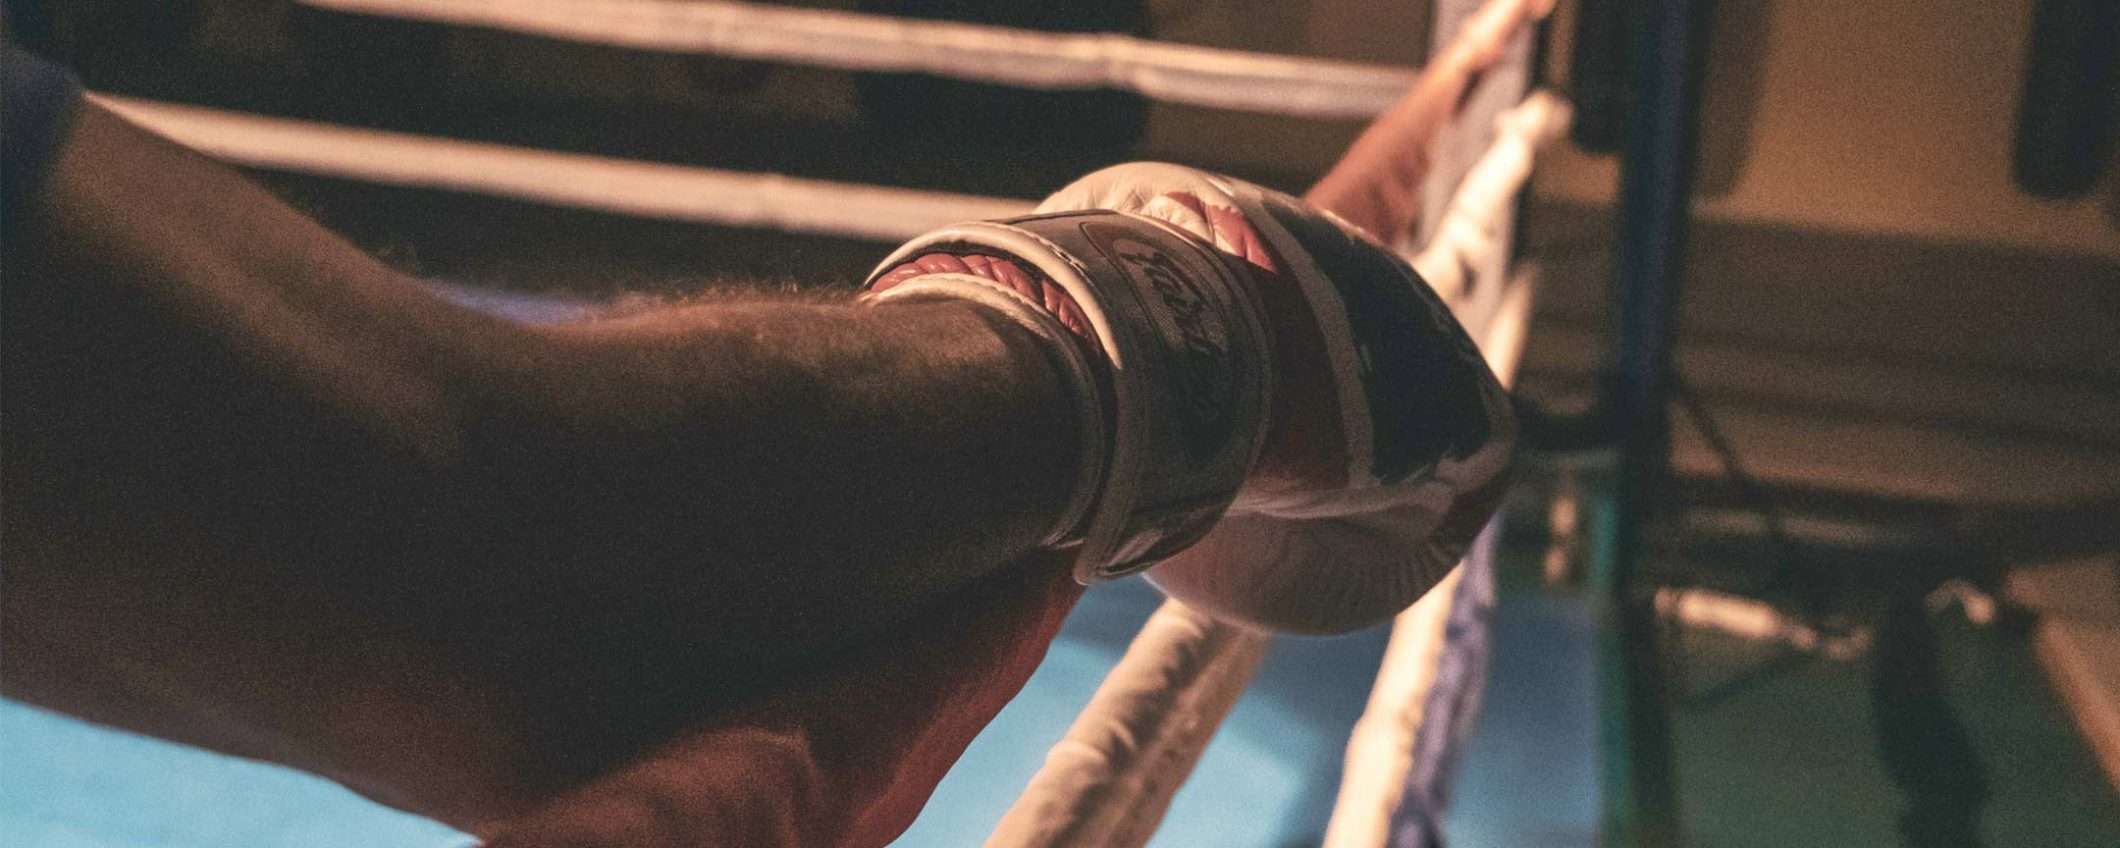 DAZN sul ring con Snapchat: la stretta di mano